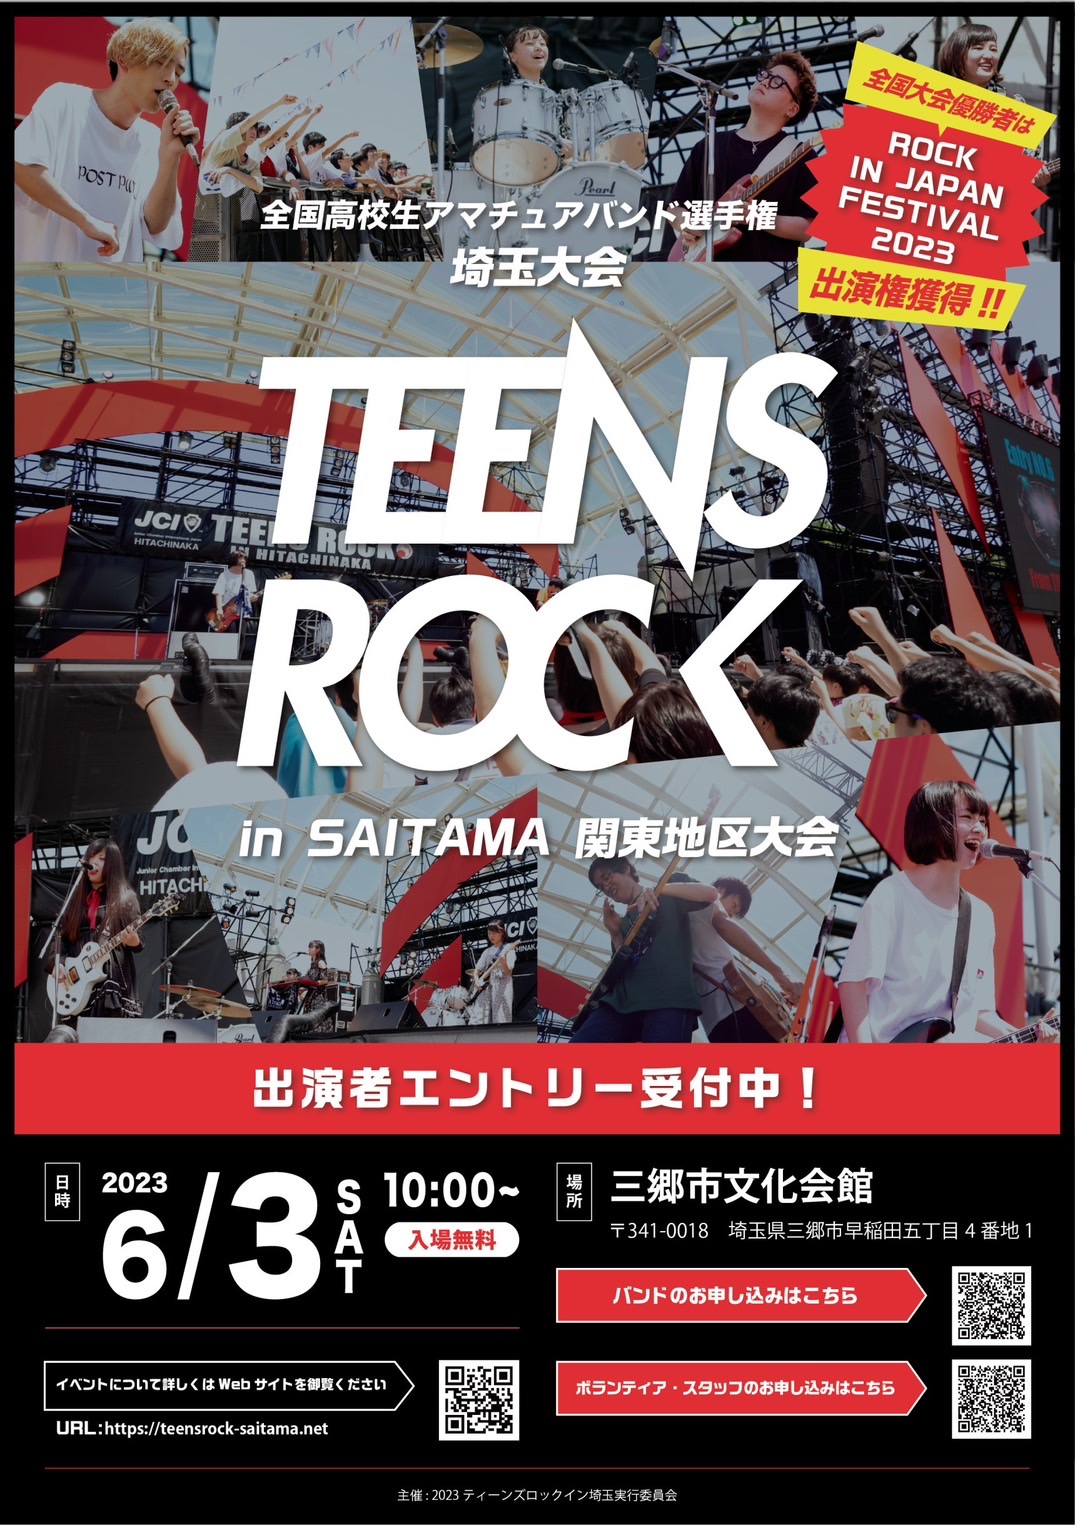 「ROCK IN JAPAN FESTIVAL 2023」 に出るぞ！！